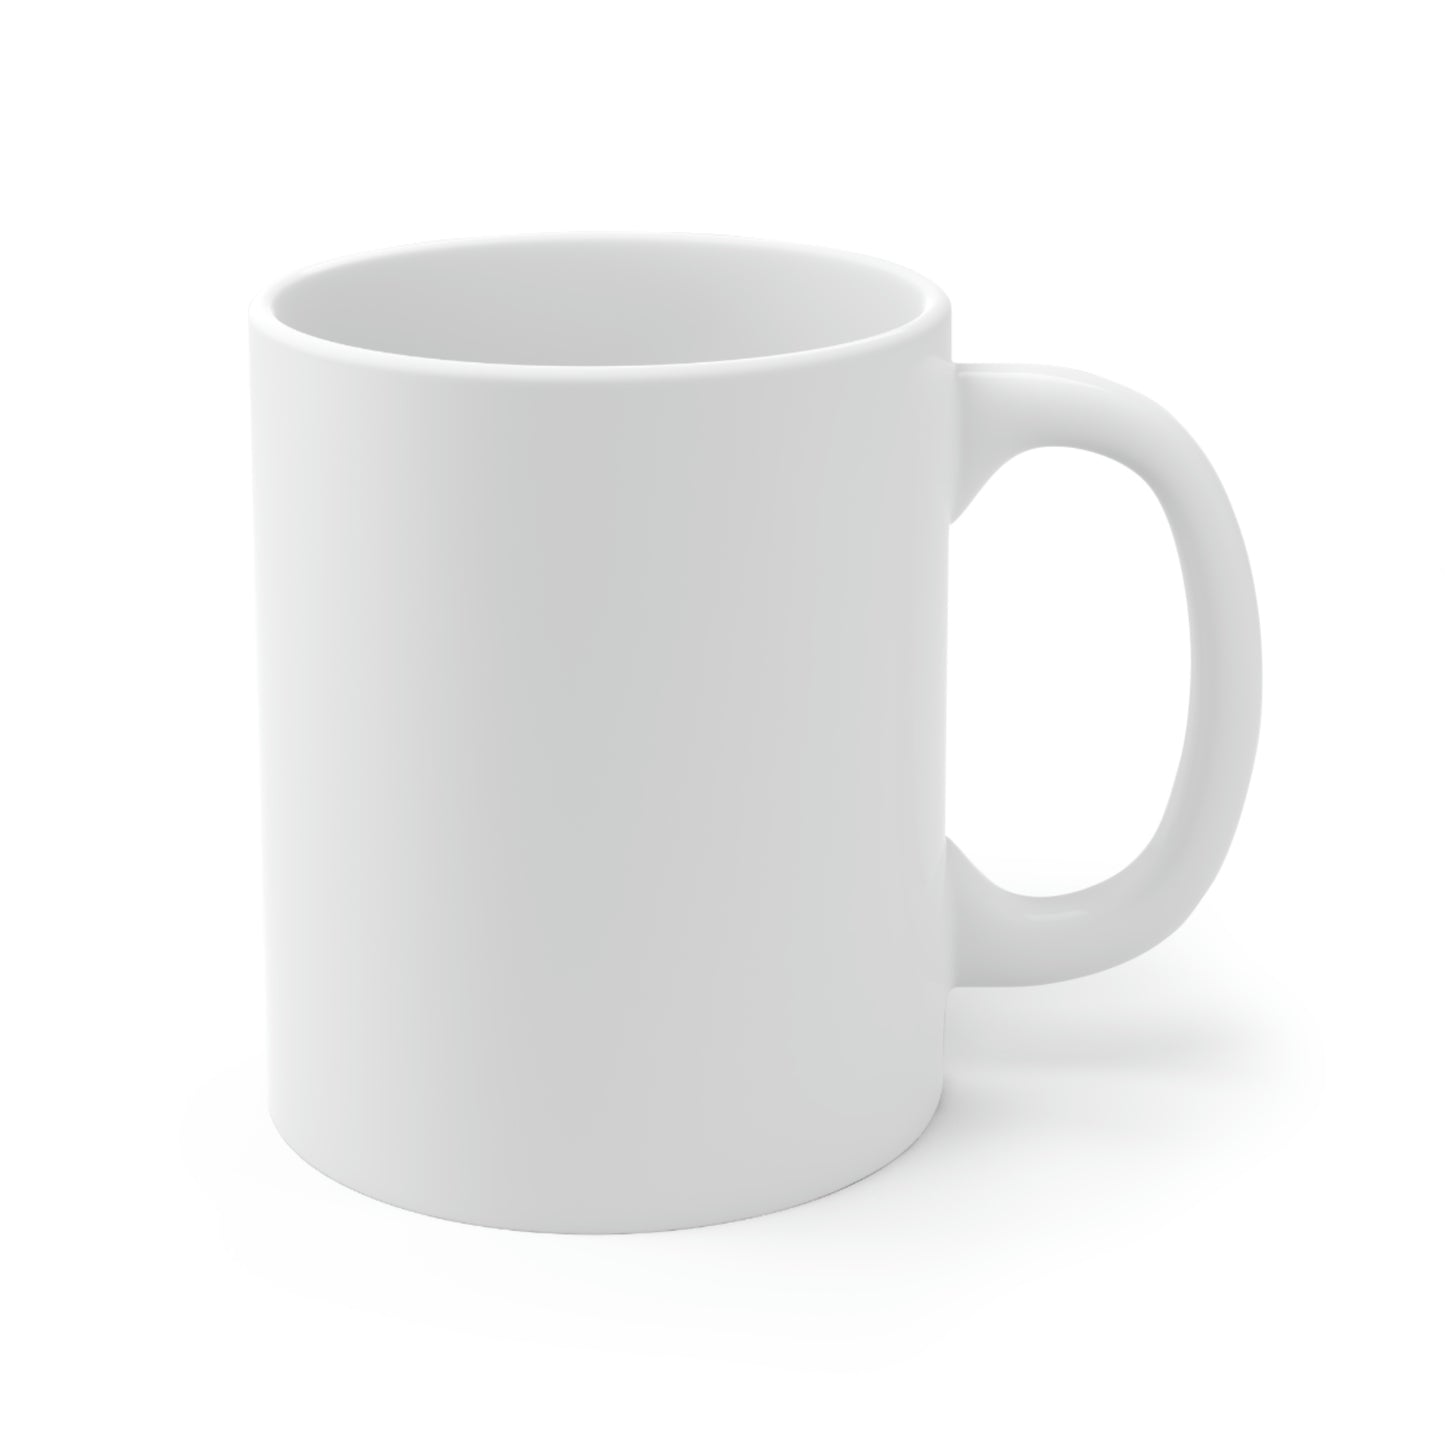 BSMG White Ceramic Mug